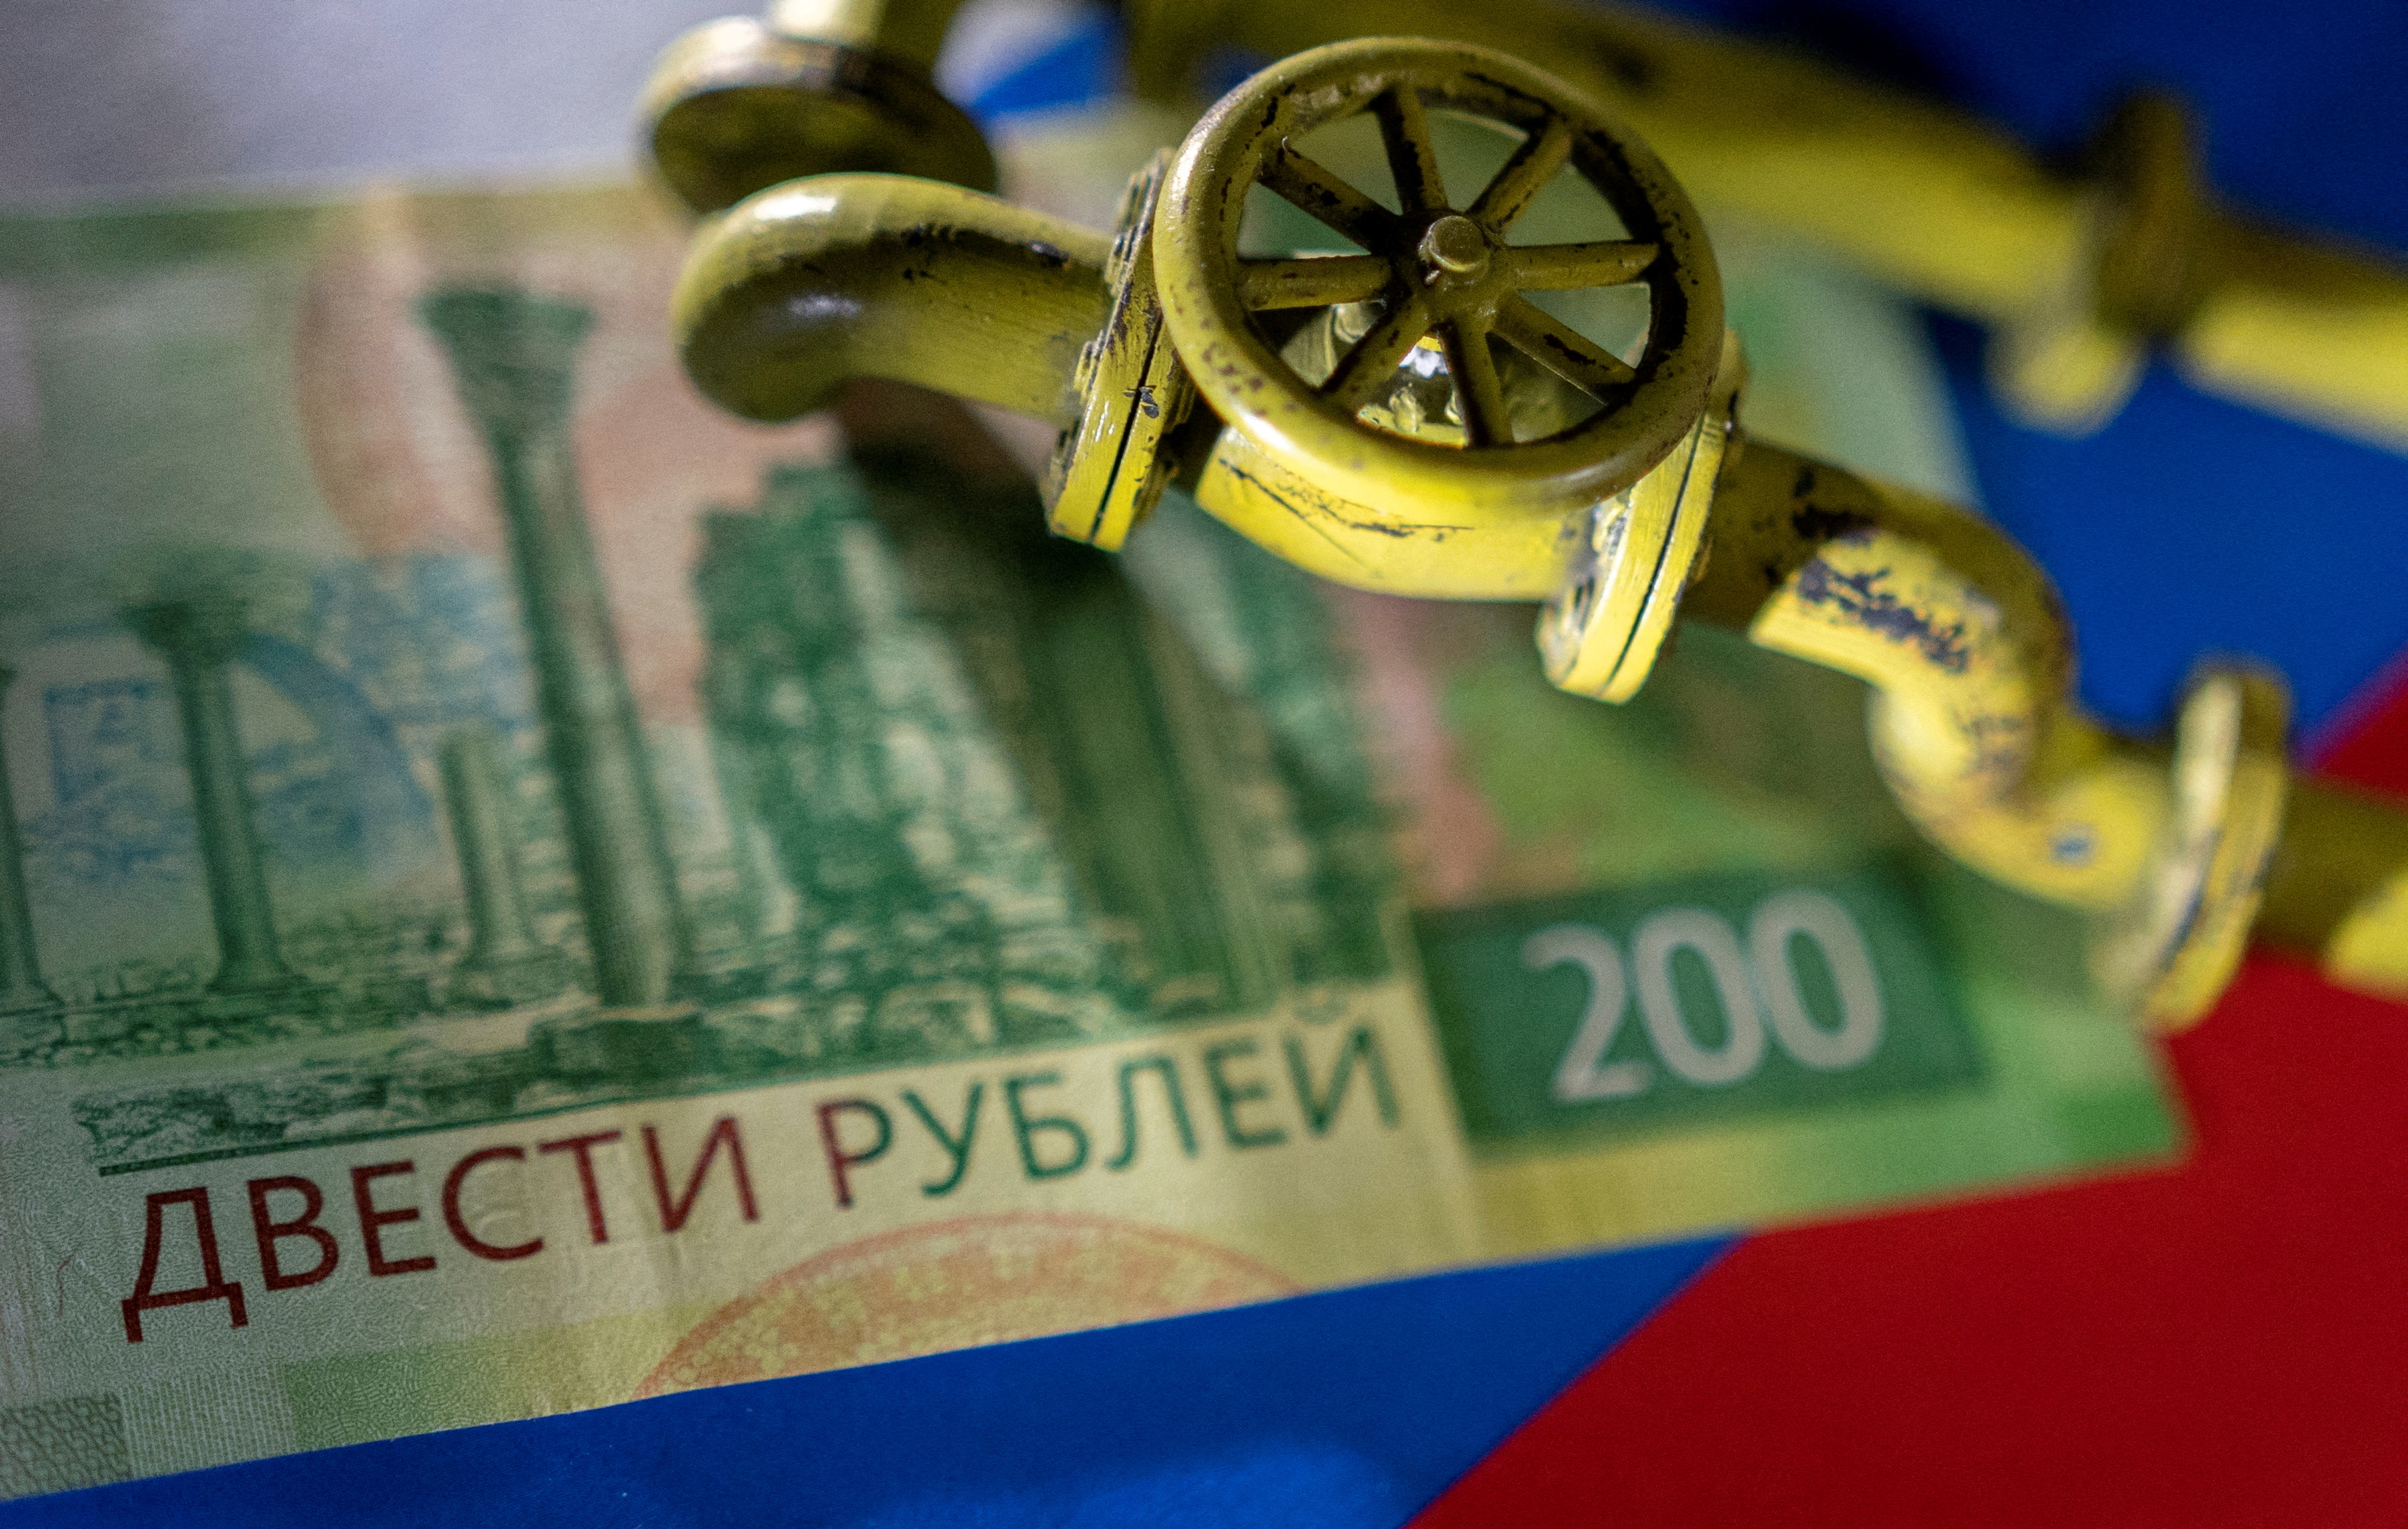 Niente rubli, niente gas: cosa c’è dietro la richiesta di pagamento di Putin?